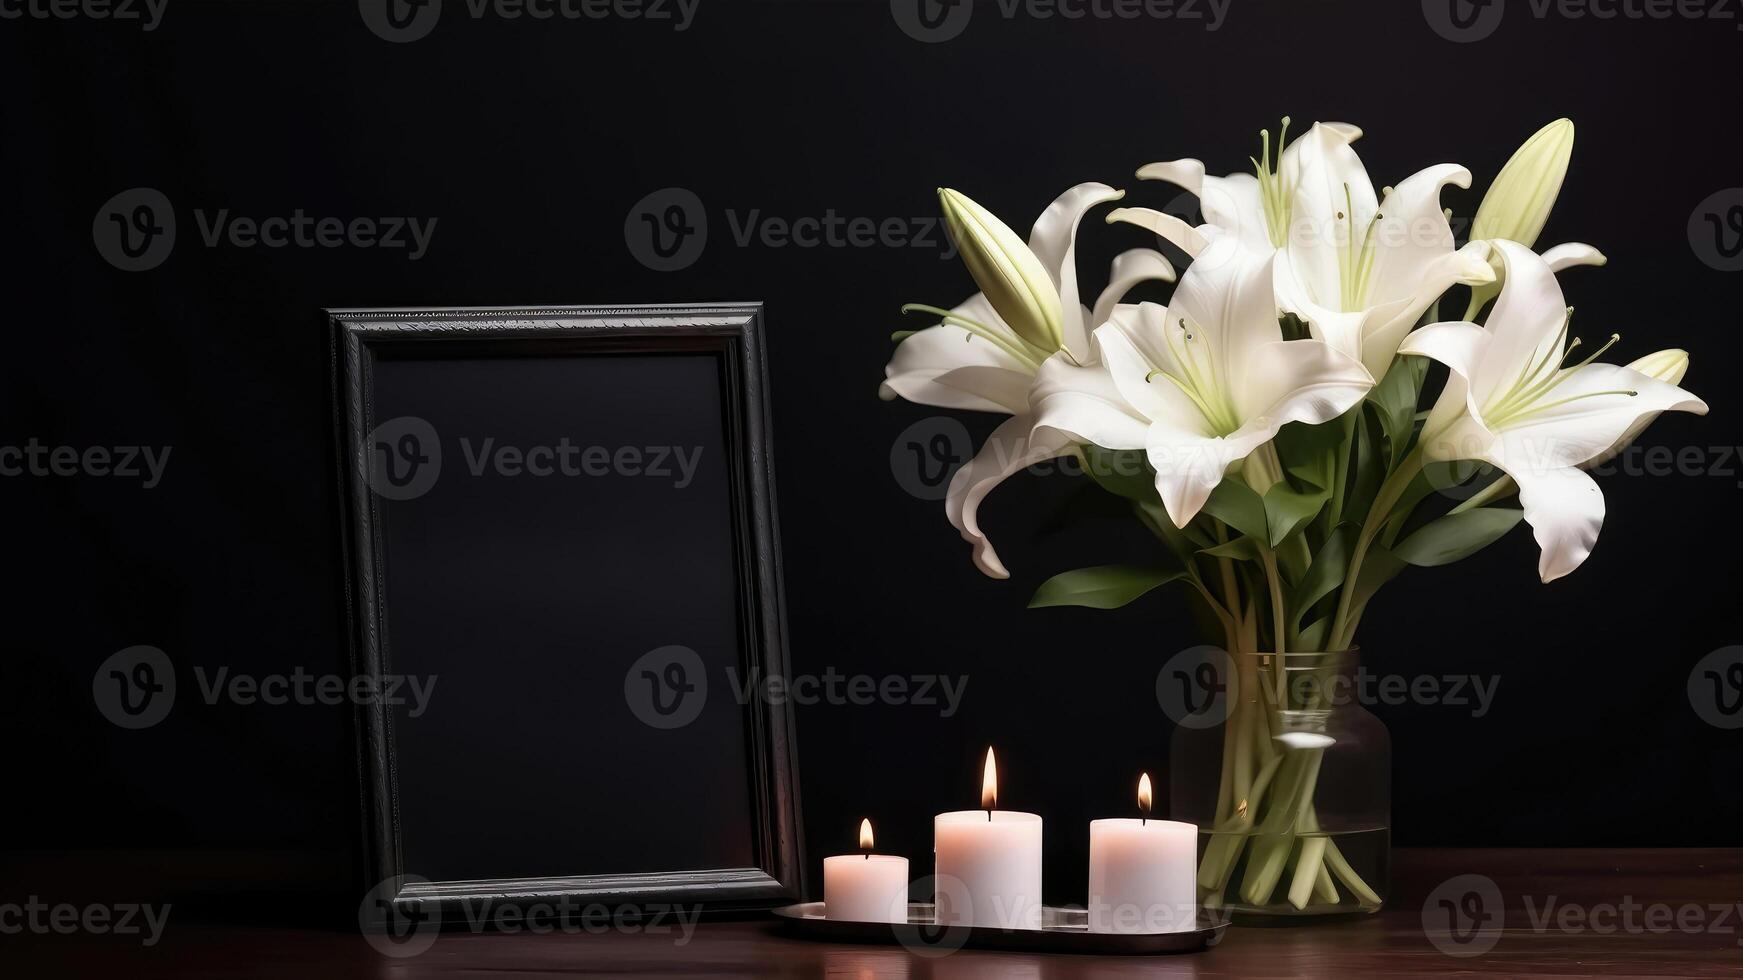 traurig Tribut - - Weiß Lilien Strauß, Verbrennung Kerze, und leeren Foto Rahmen auf schwarz Hintergrund